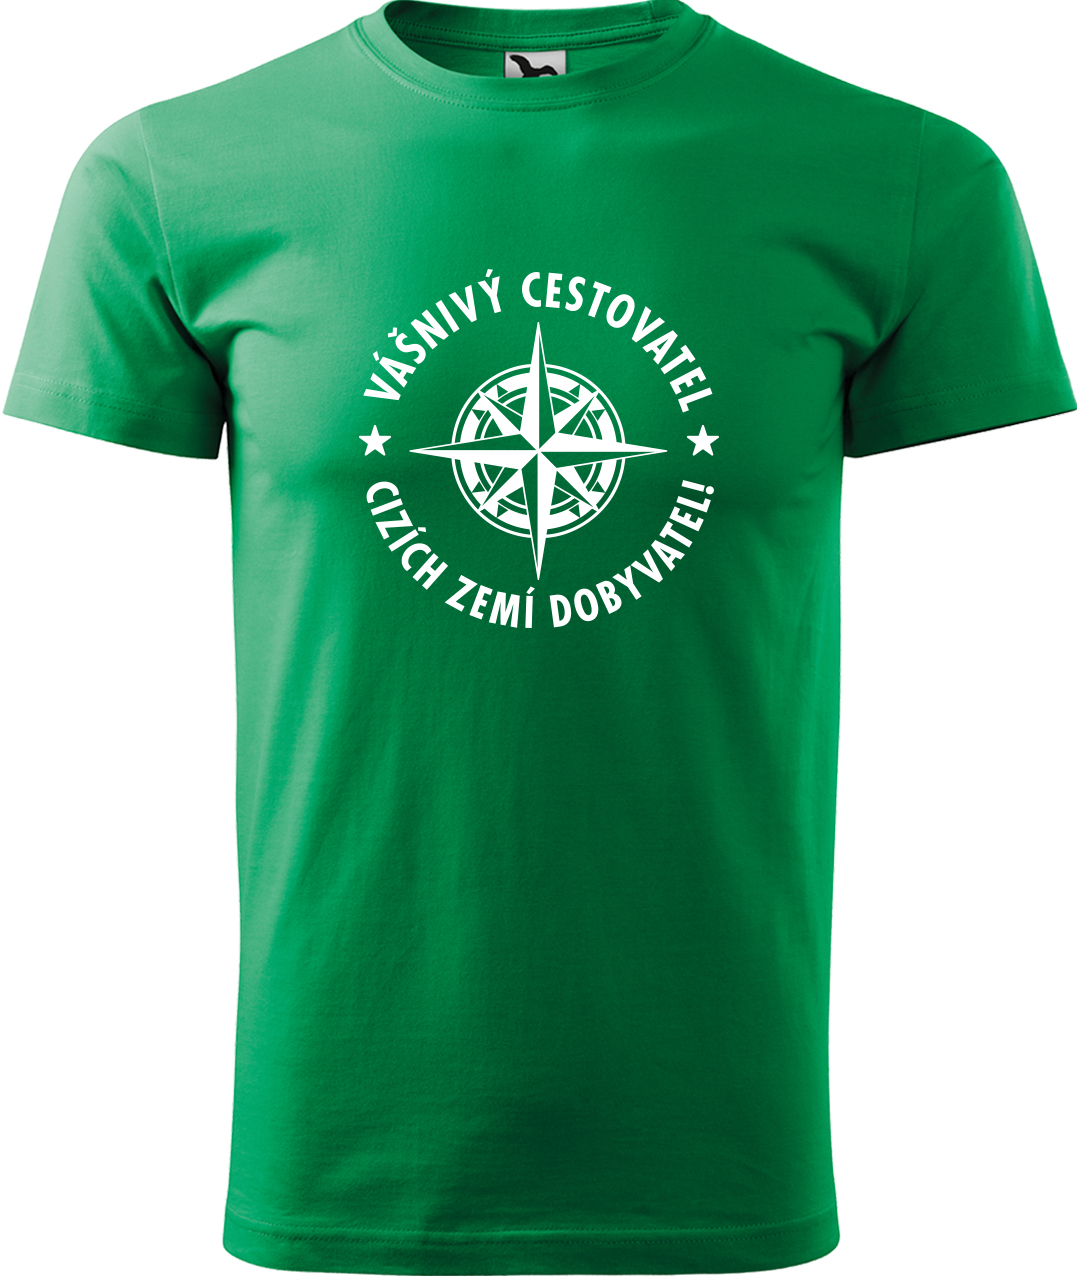 Pánské cestovatelské tričko - Vášnivý cestovatel, cizích zemí dobyvatel Velikost: M, Barva: Středně zelená (16), Střih: pánský